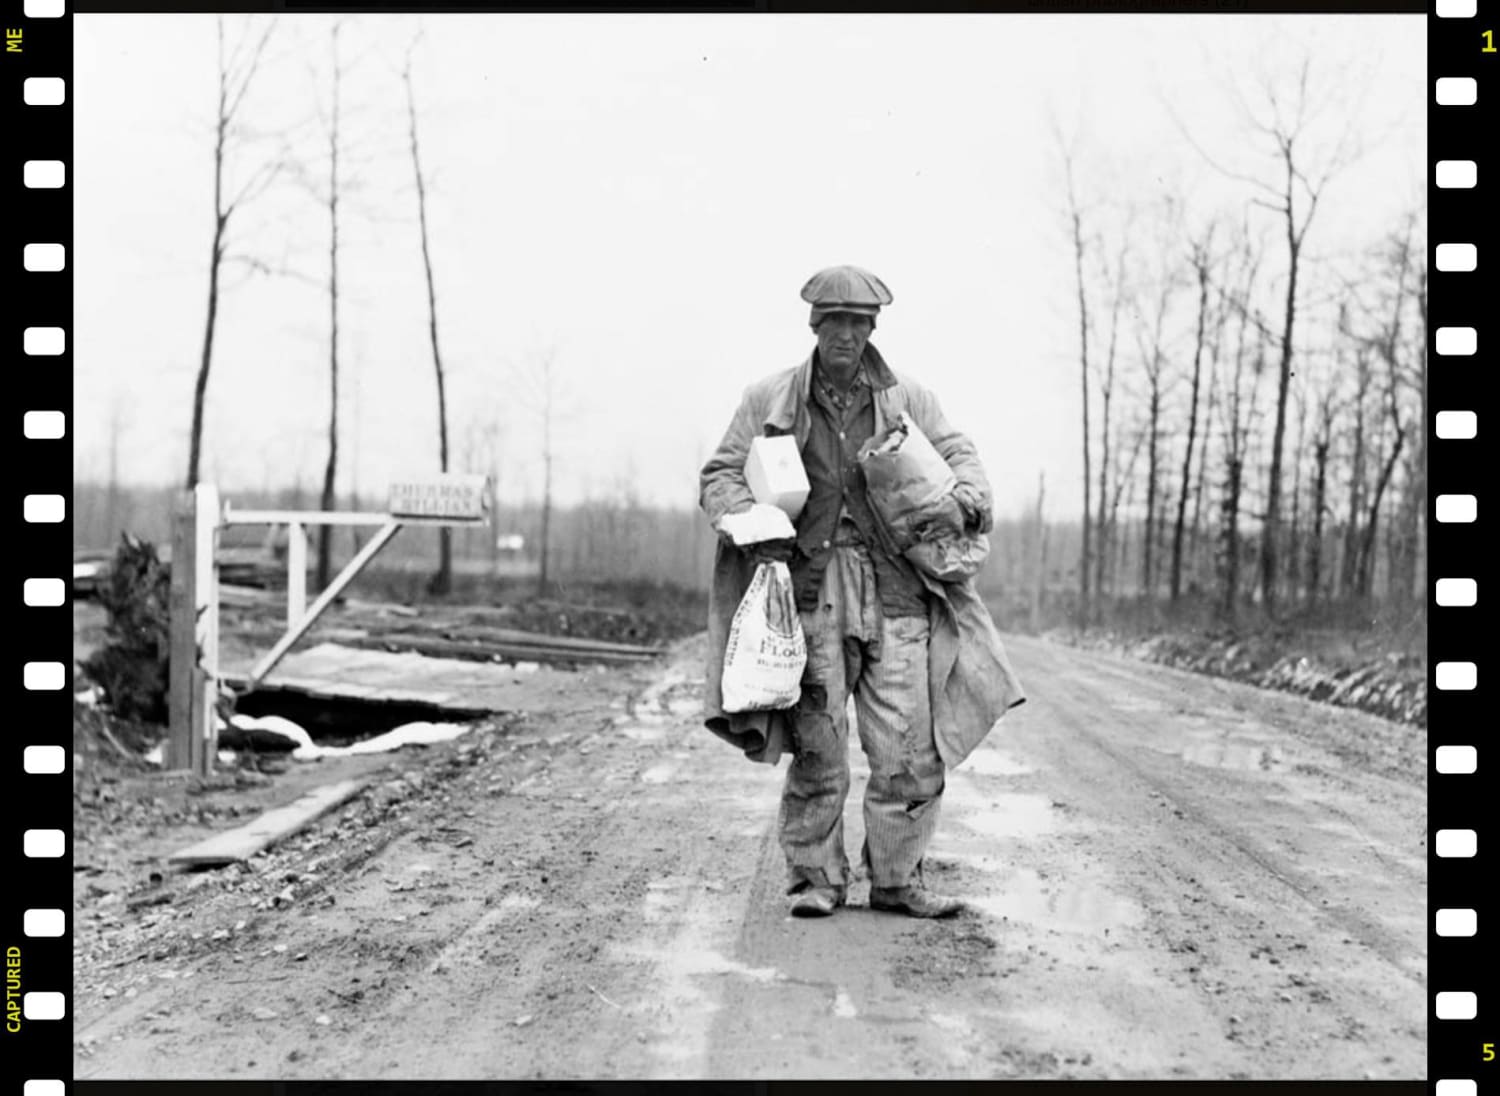 Farmer after shopping trip, Skyline Farms, Alabama, 1937. Photographer Arthur Rothstein.